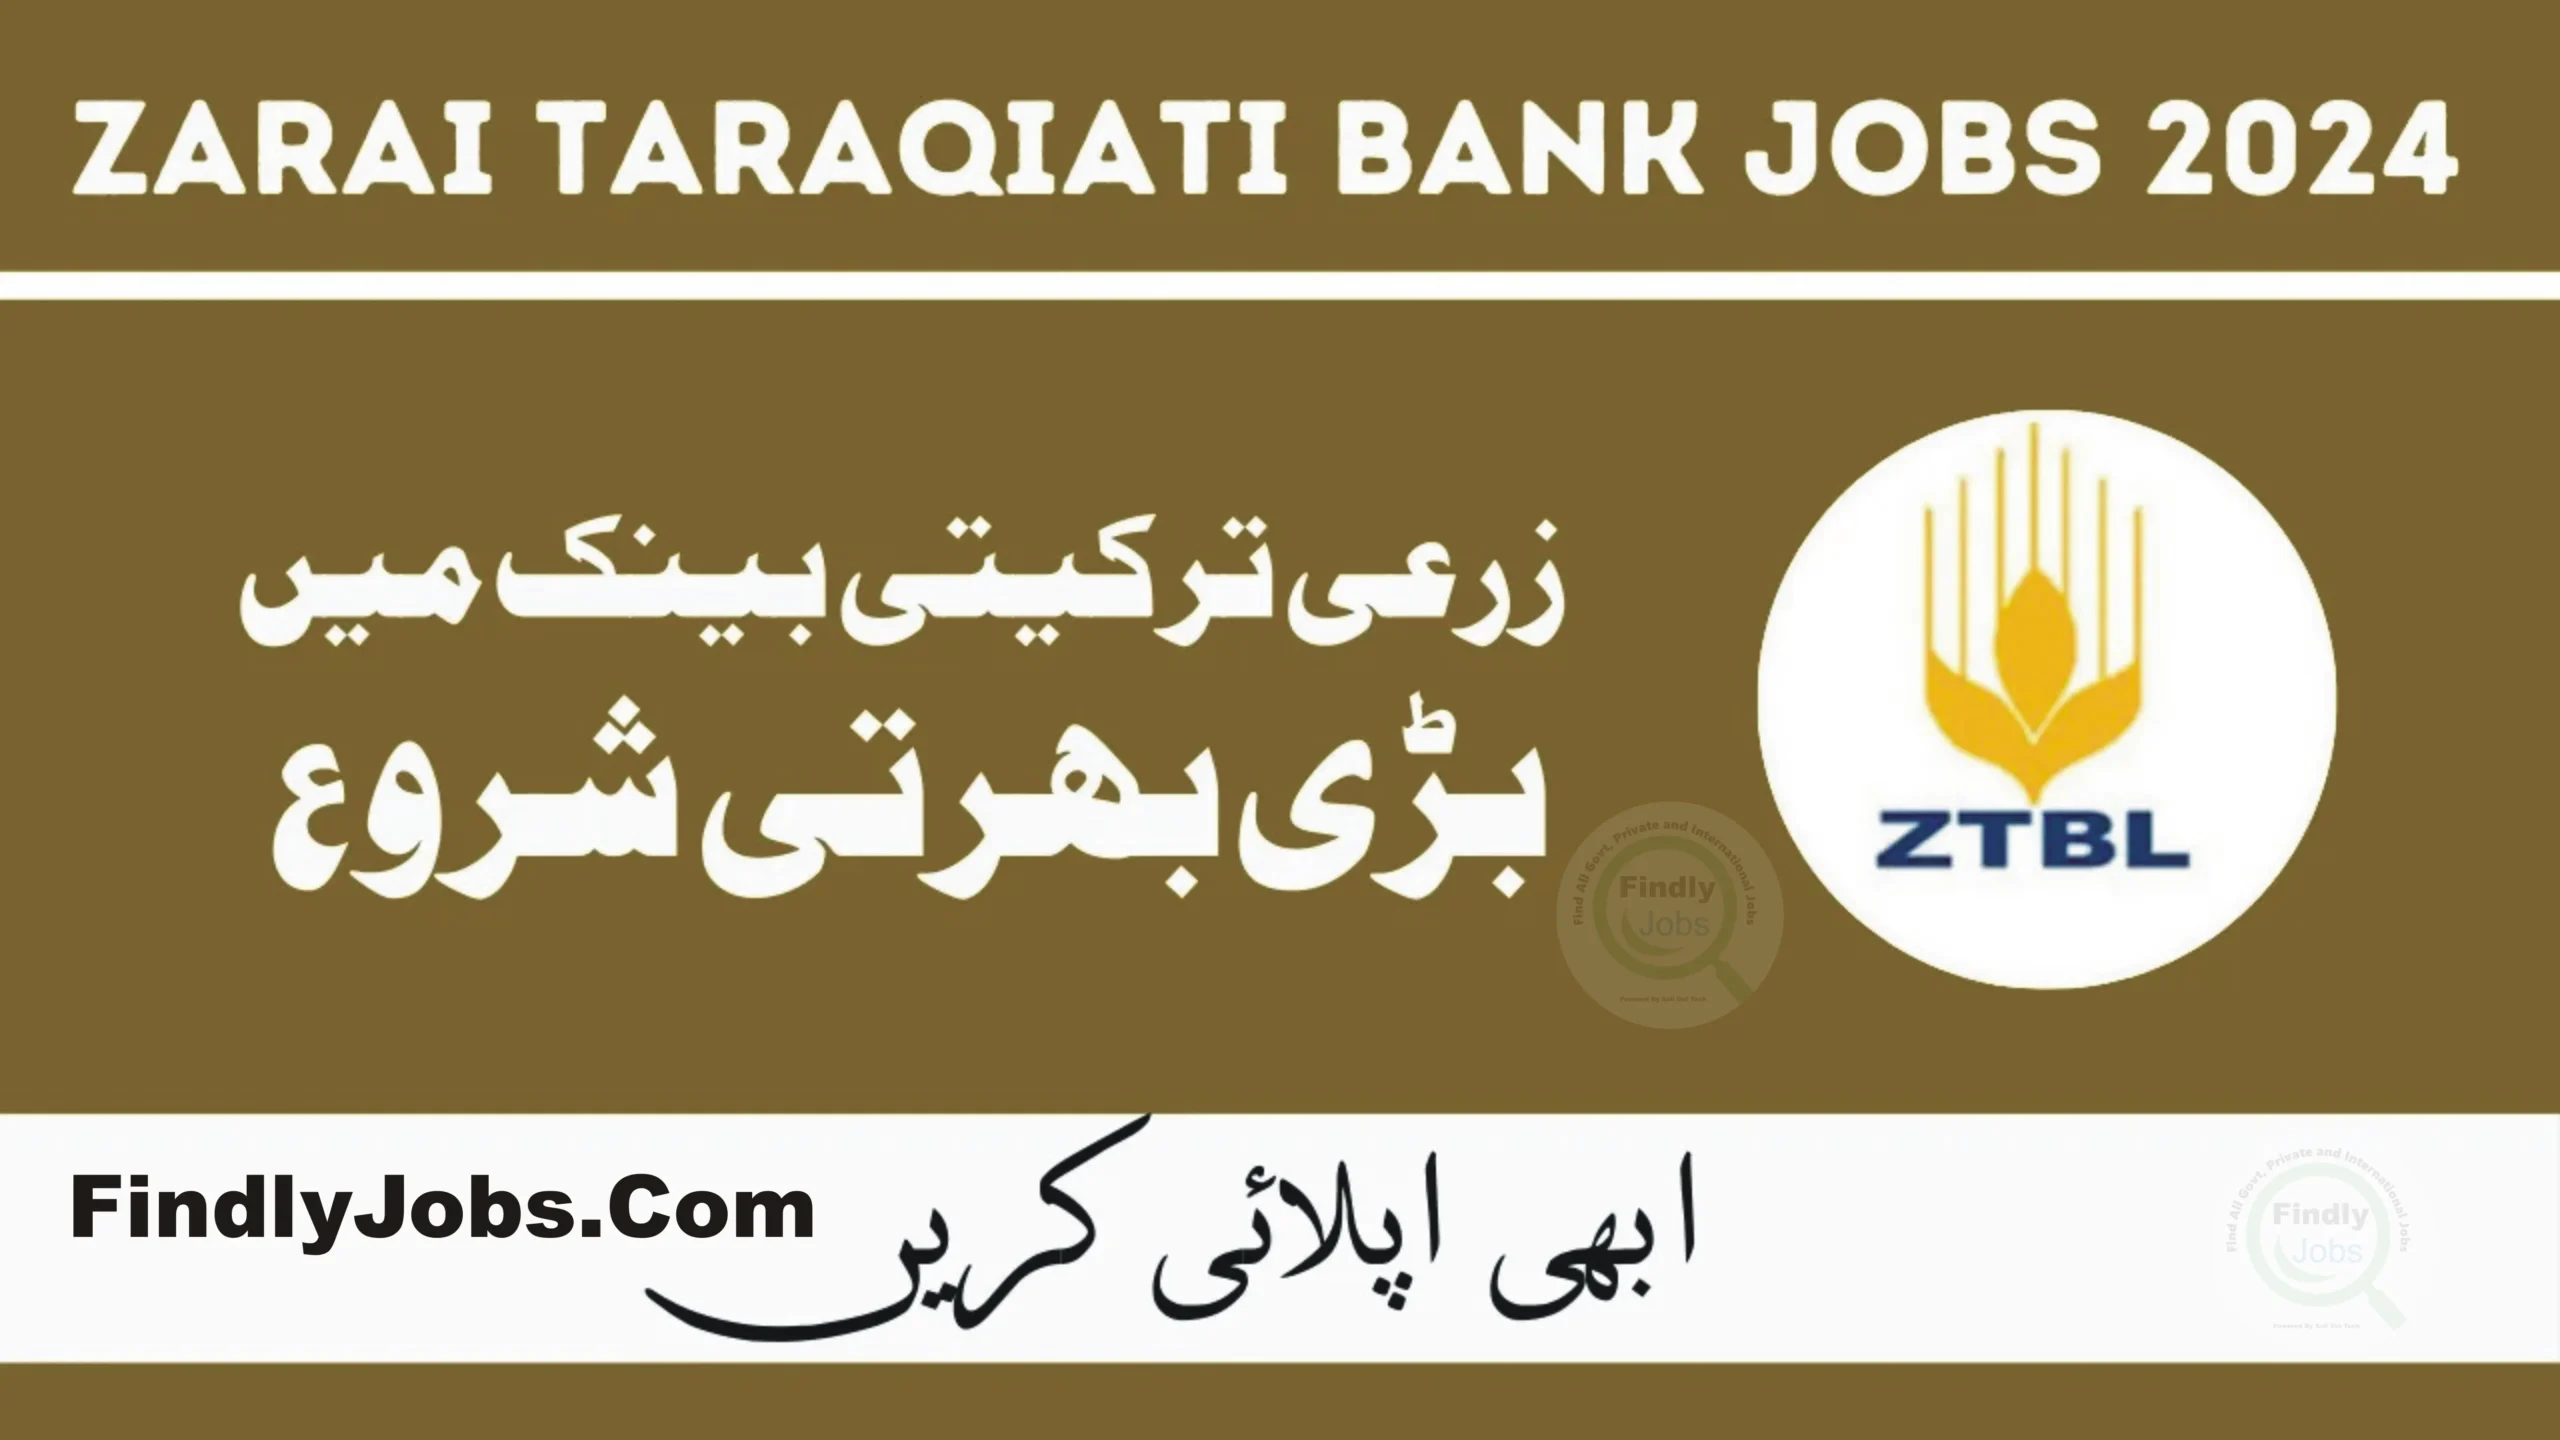 ZTBL Jobs 2024 Zarai Taraqiati Bank Limited ads